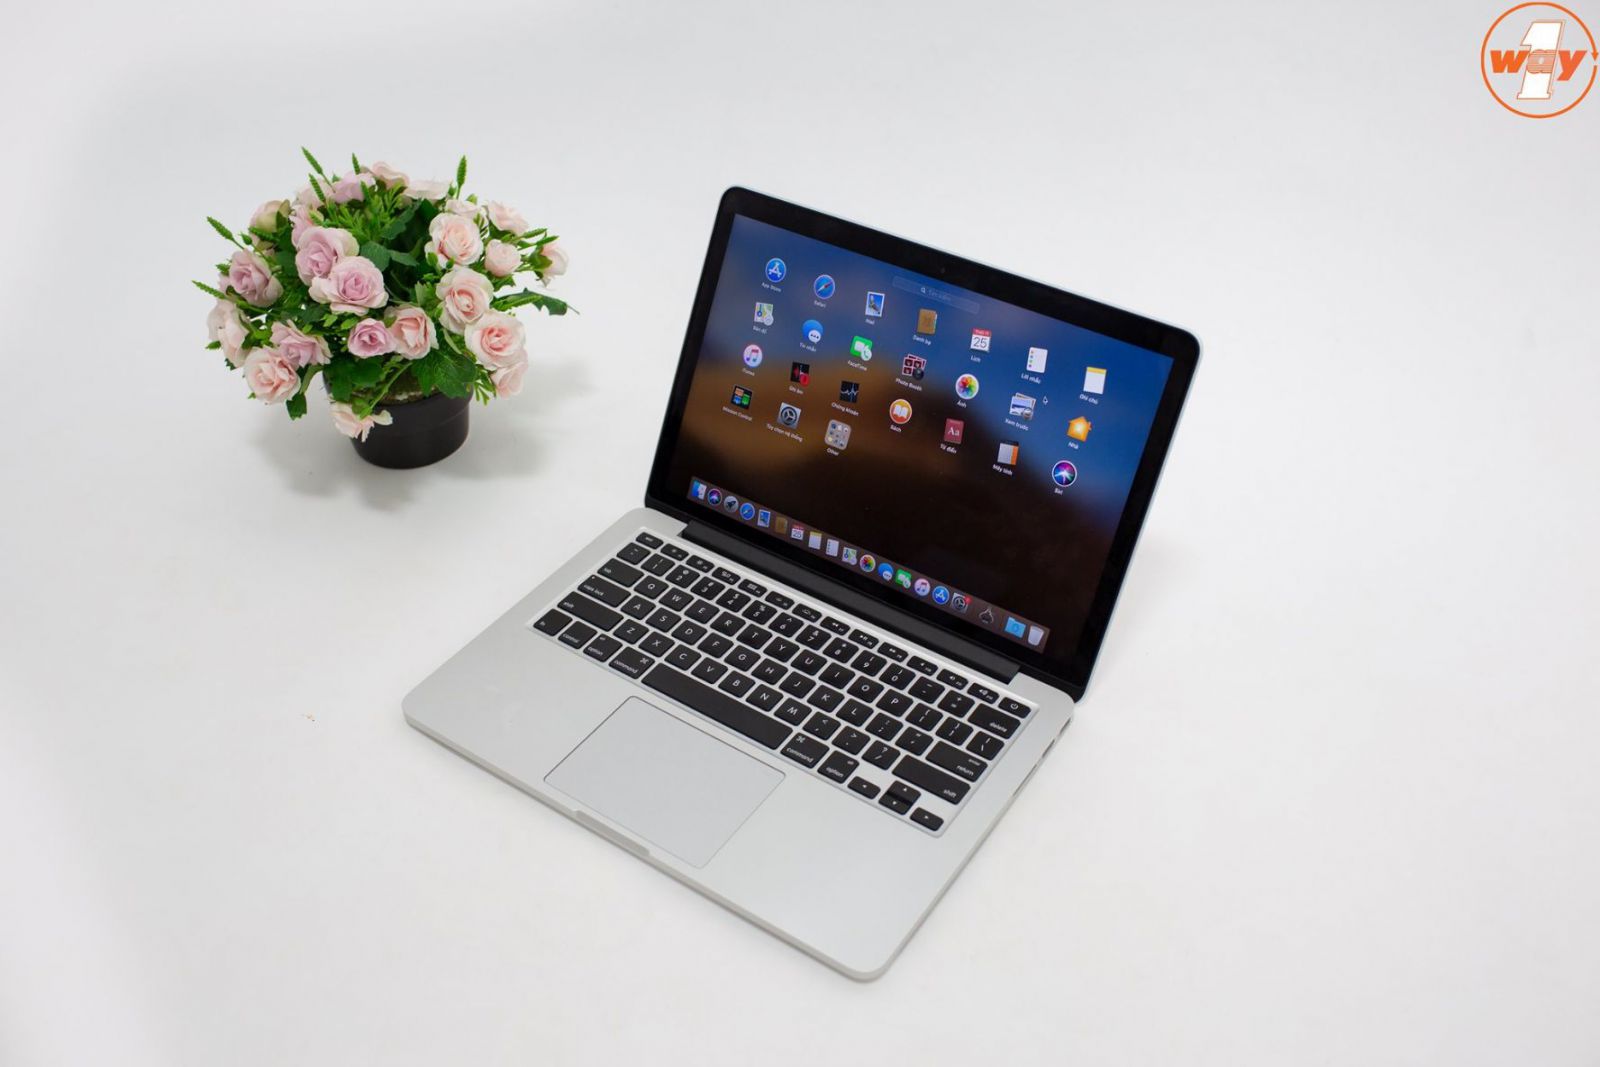 MacBook Pro mã MF839 cũ tại Oneway có chất lượng như mới đến 99%